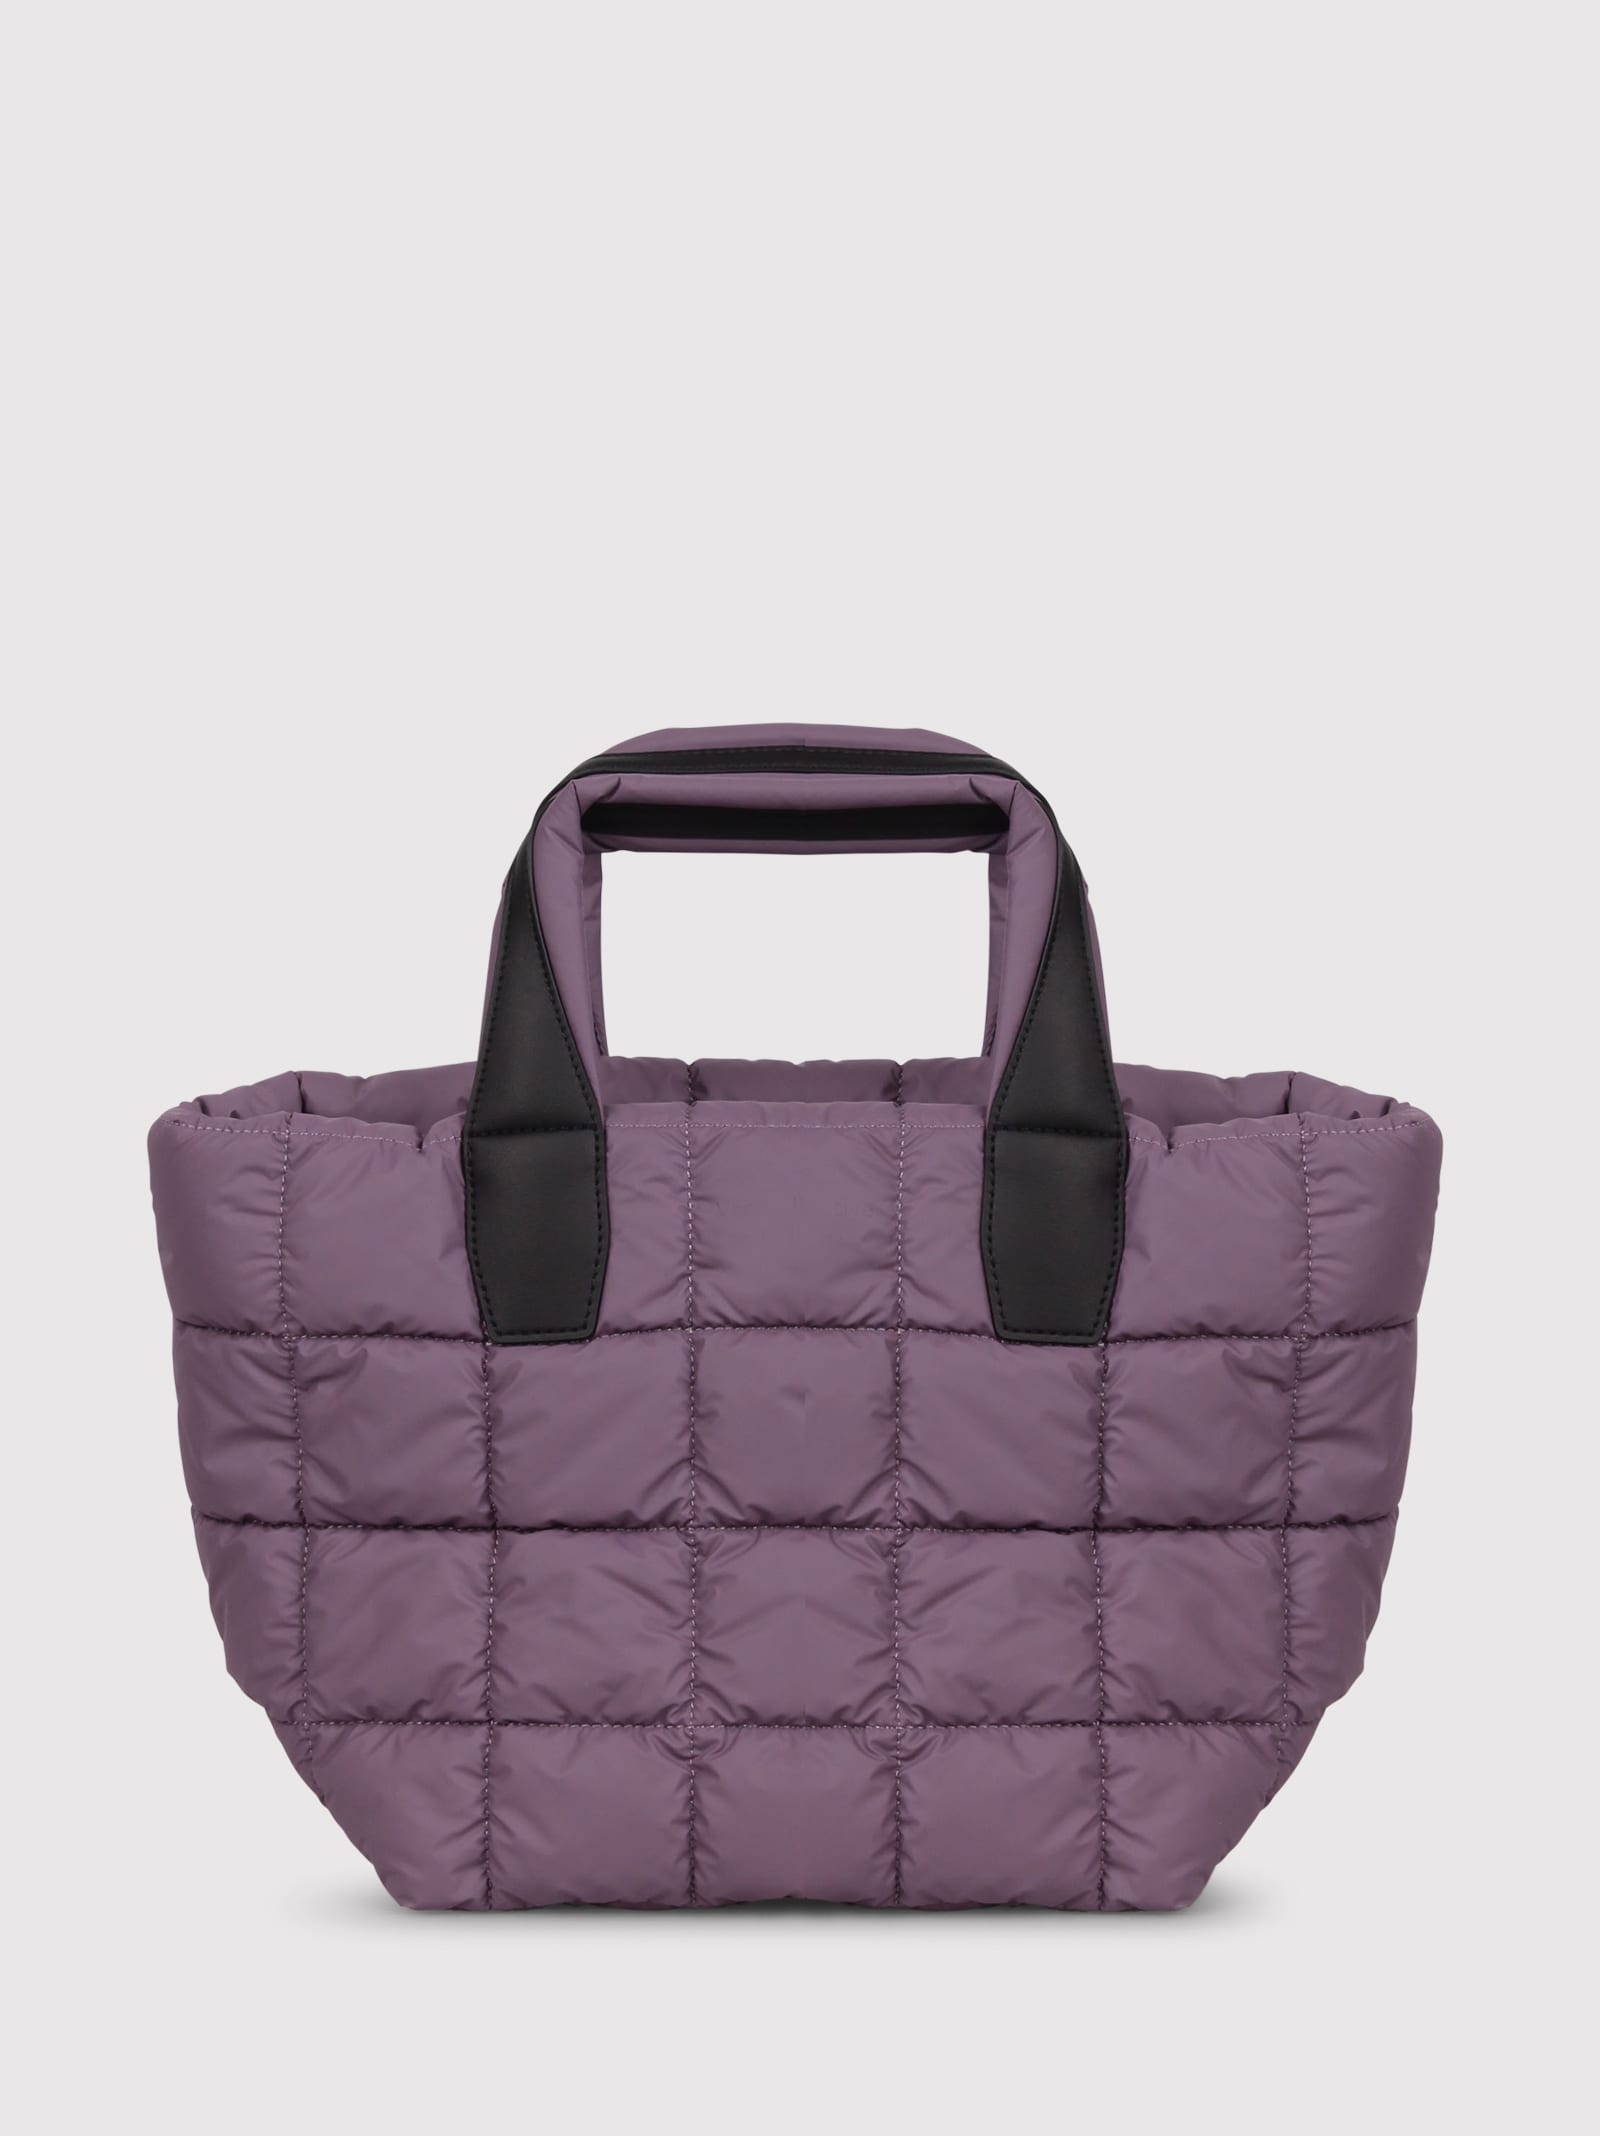 Shop Veecollective Vee Collective Small Porter Handbag